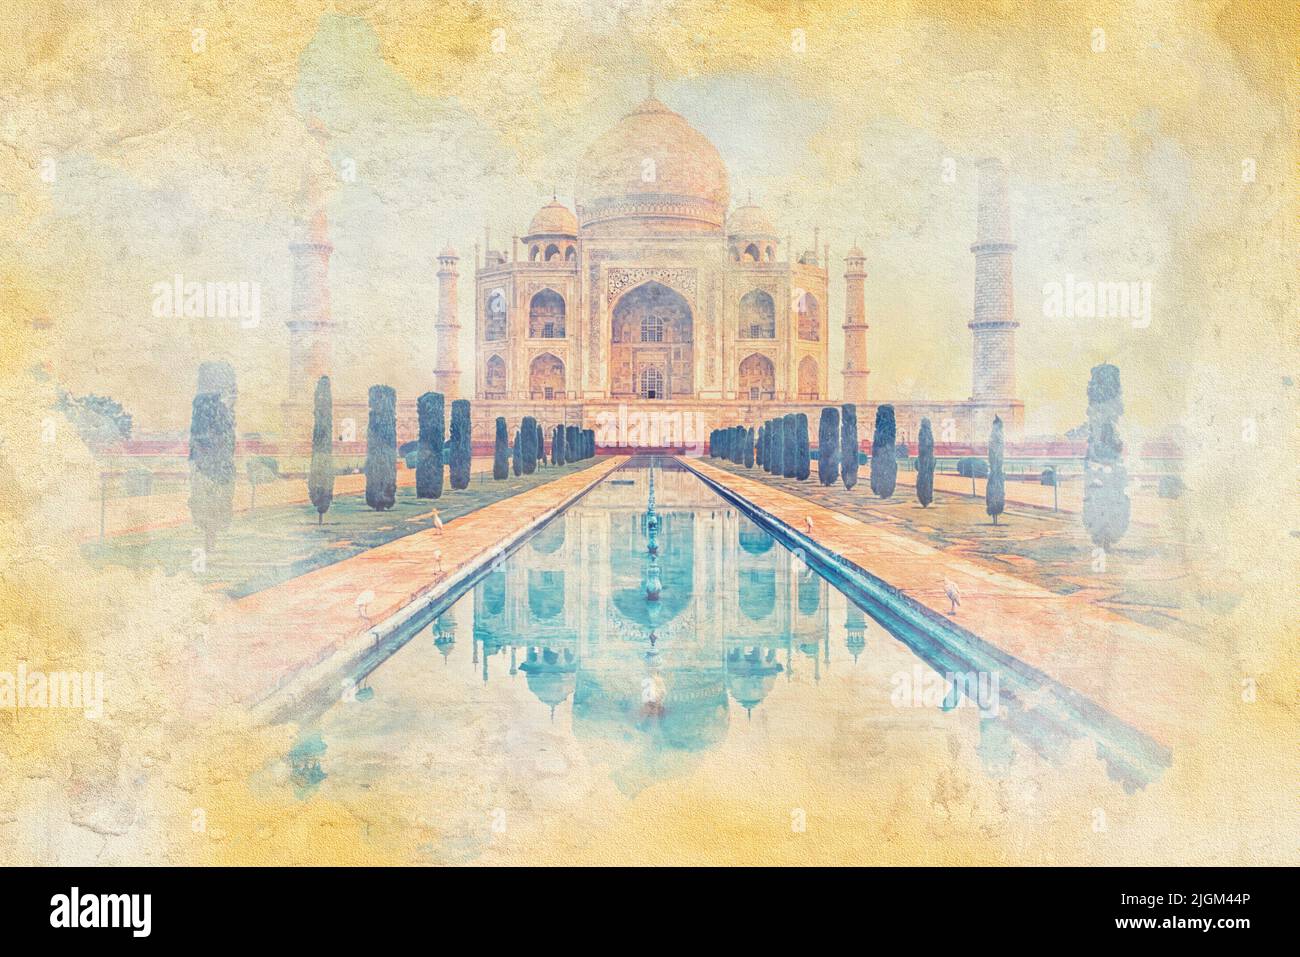 Taj Mahal Mausoleum in Indien - Aquarell Effekt Illustration Stockfoto